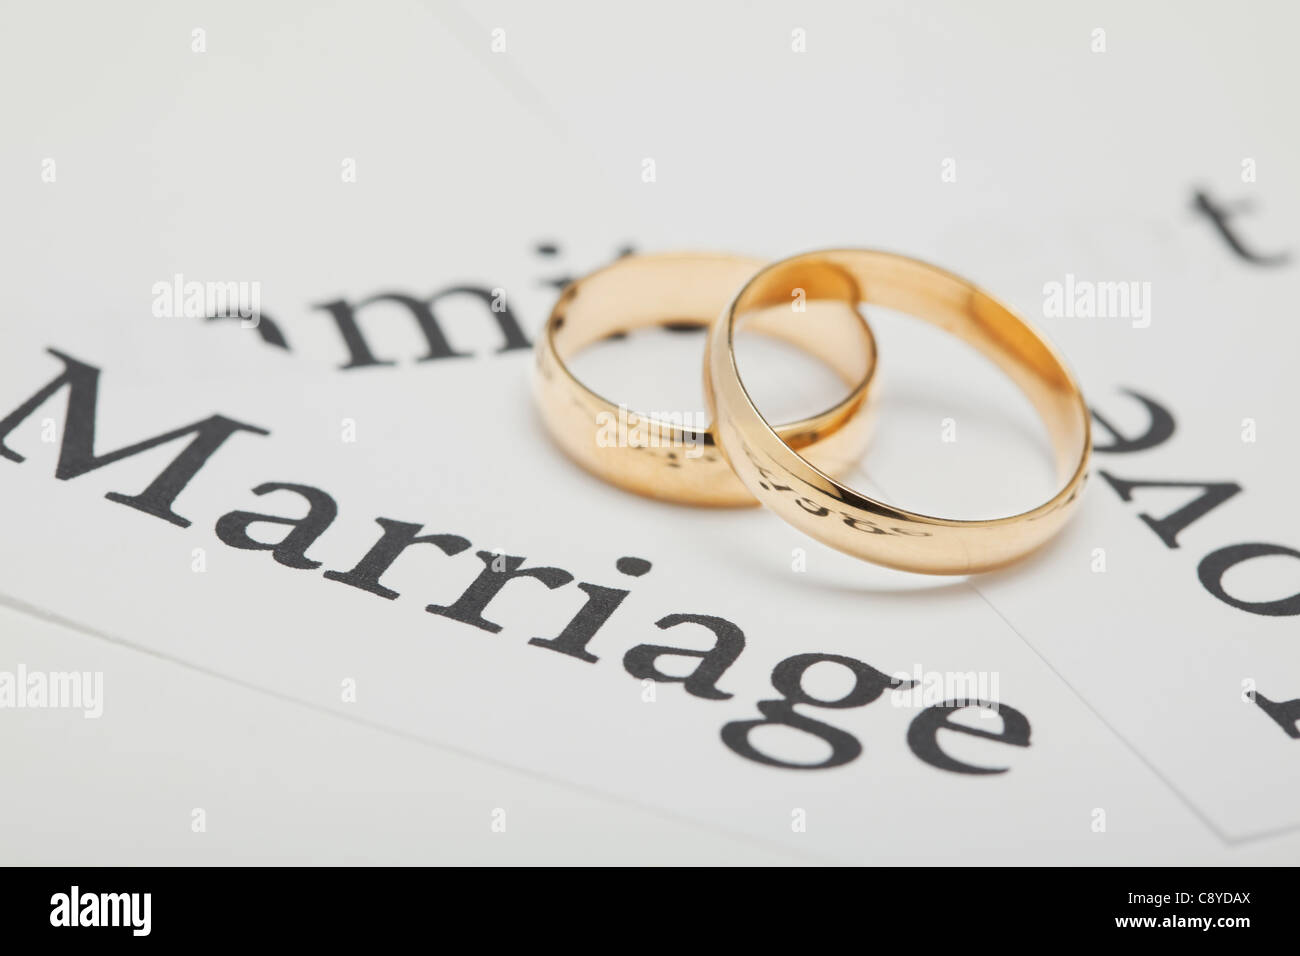 États-unis, Illinois, Metamora, deux anneaux de mariage sur papier avec des mots liés à wedding Banque D'Images